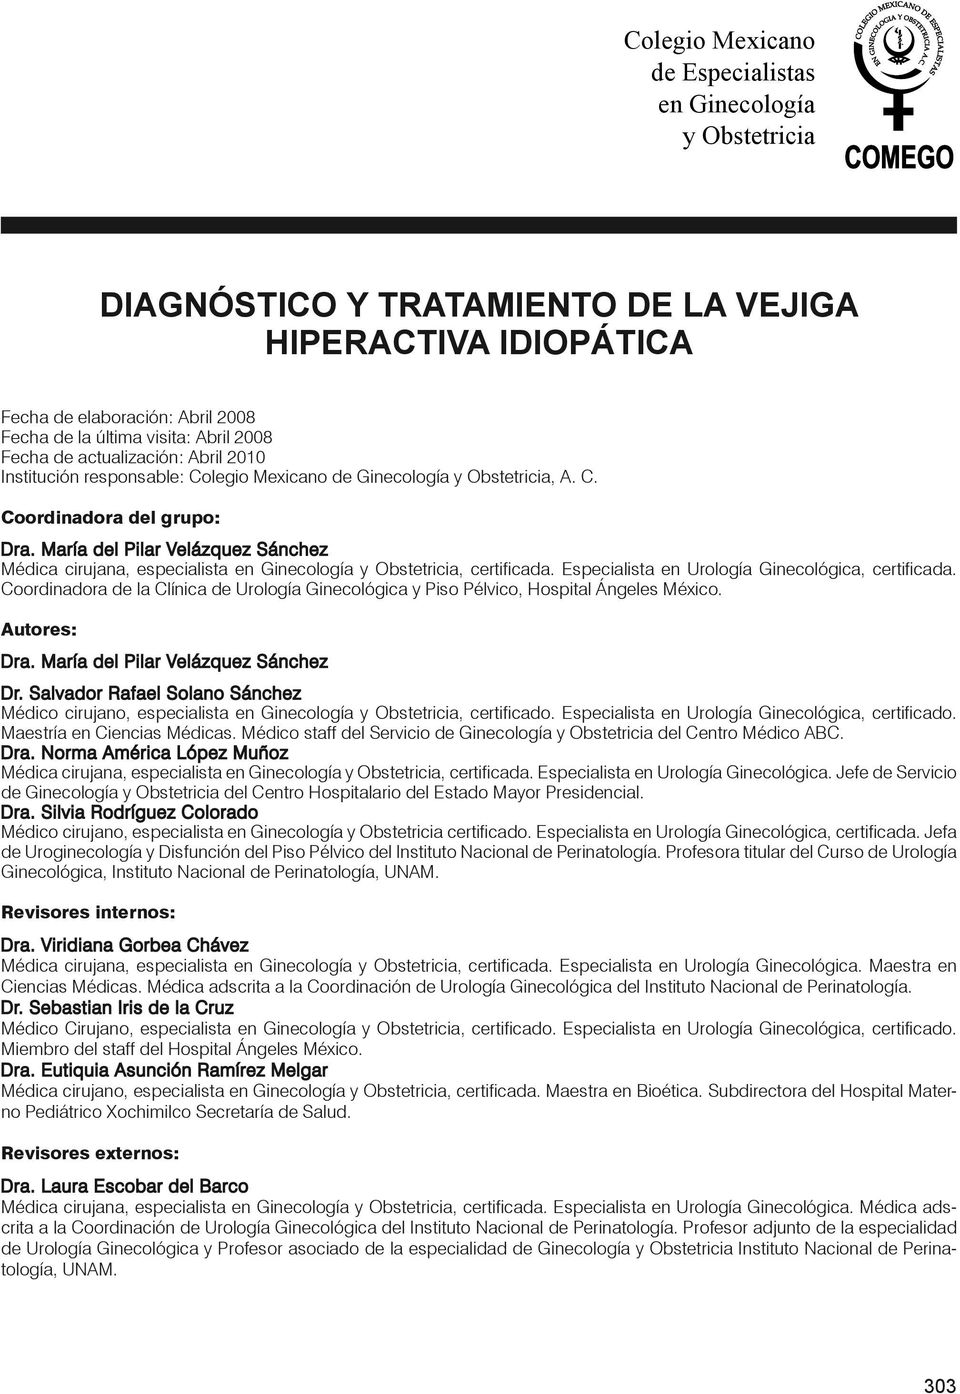 María del Pilar Velázquez Sánchez Médica cirujana, especialista en Ginecología y Obstetricia, certificada. Especialista en Urología Ginecológica, certificada.